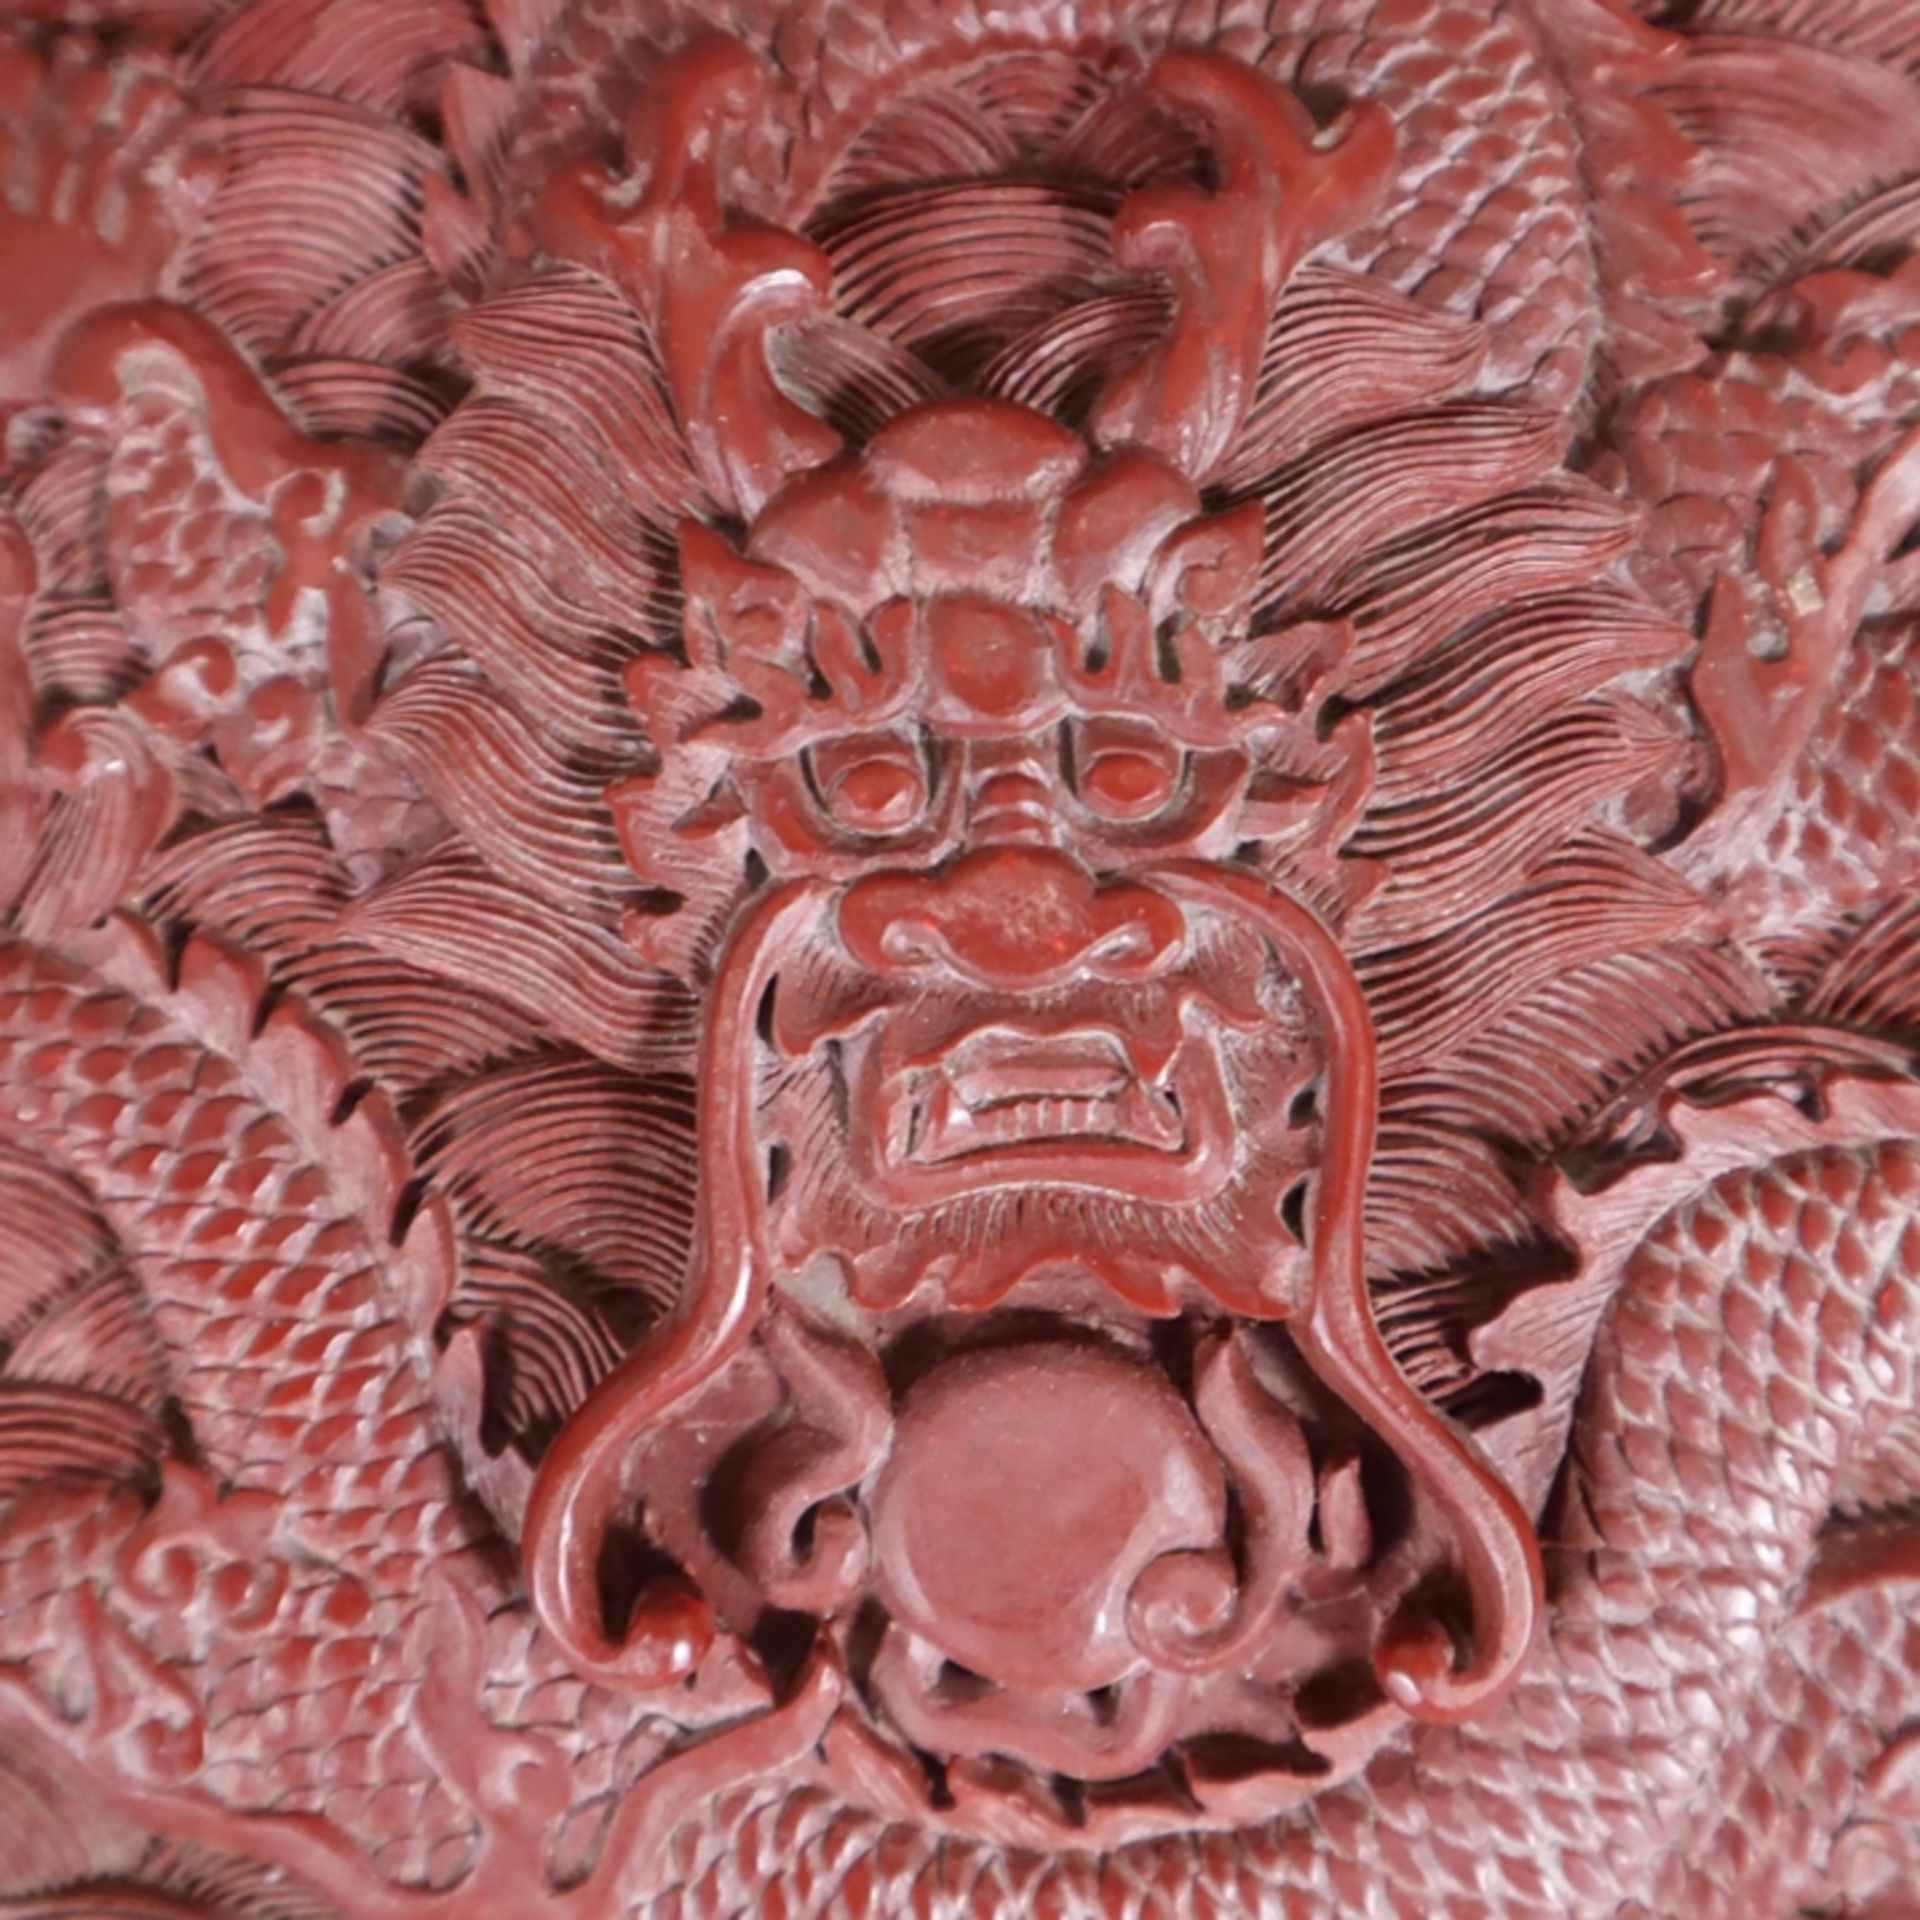 Große Lackplakette - China, roter Lack, rechteckig, in Reliefarbeit gewundener fünfklauiger Drache  - Bild 2 aus 6